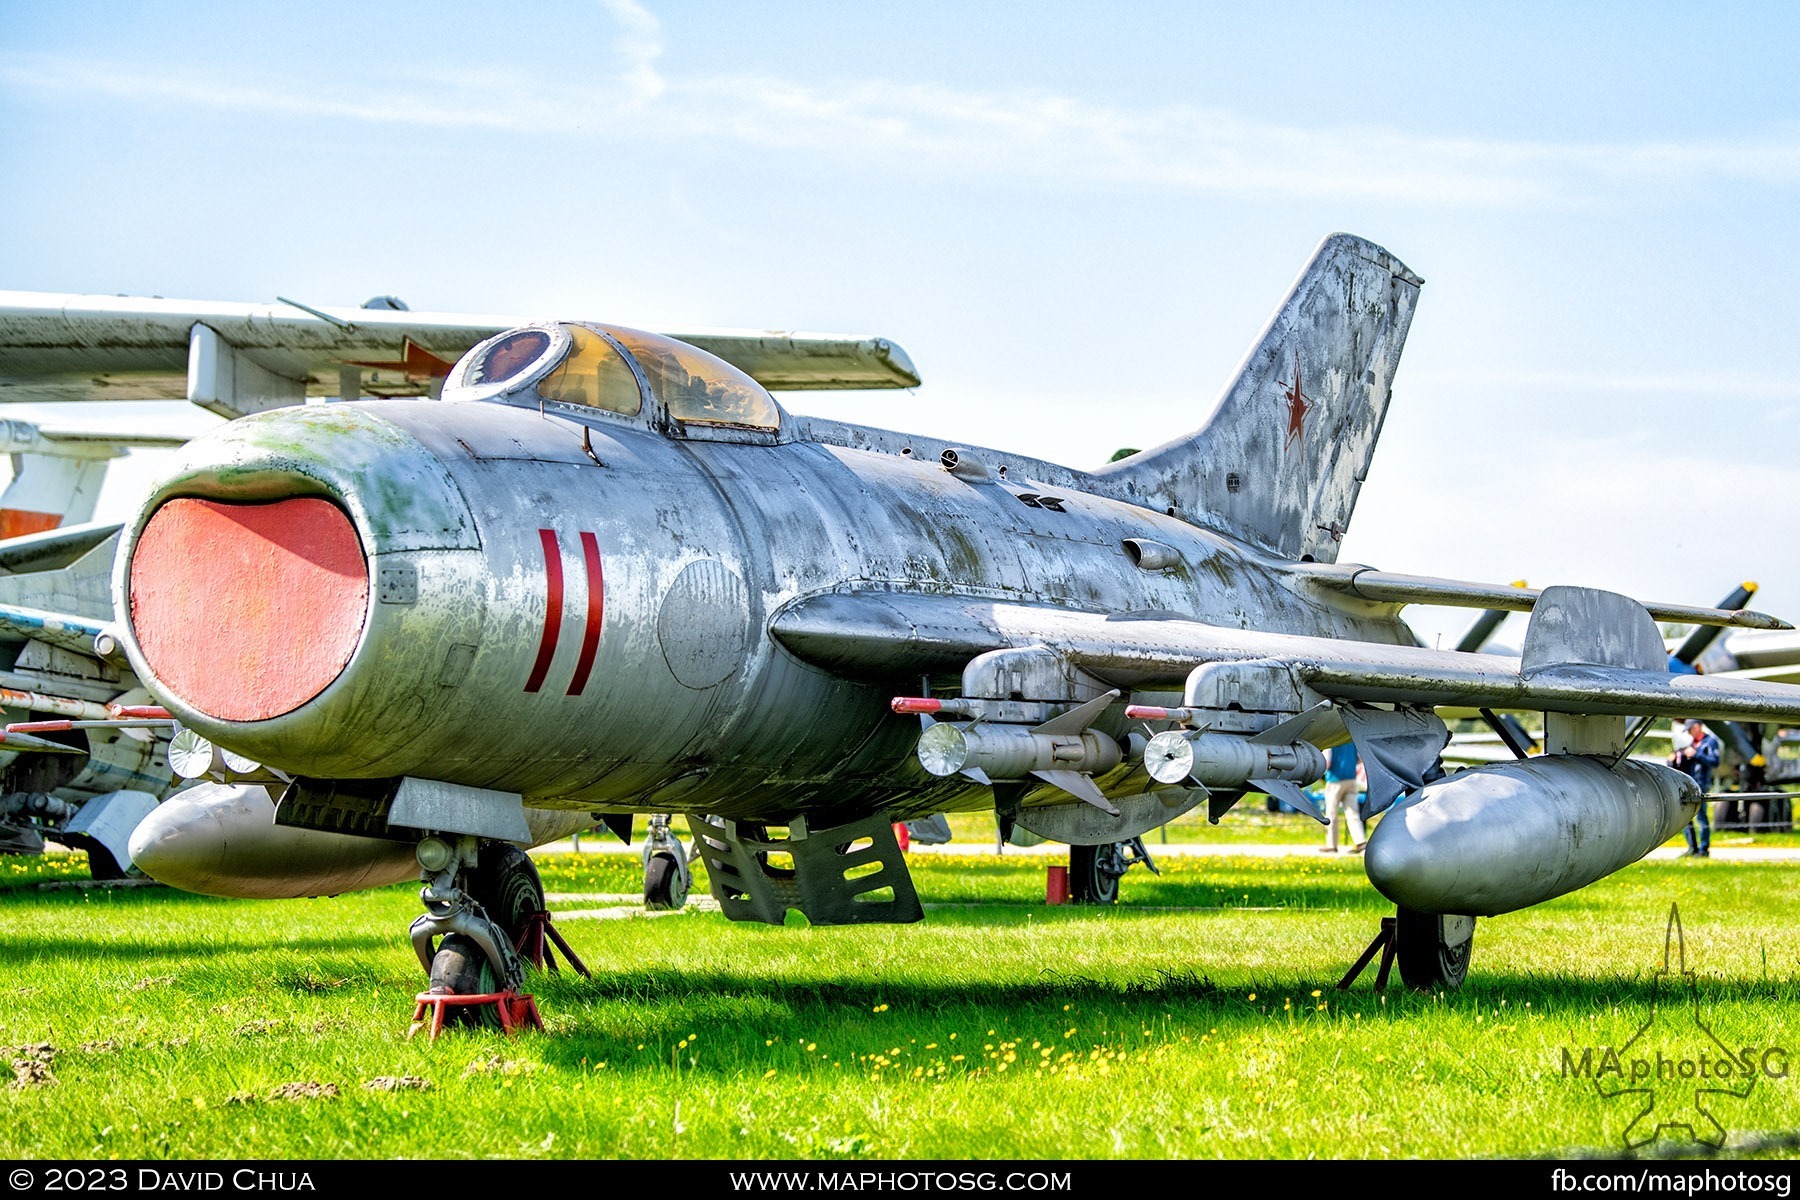 Mikoyan MiG-19